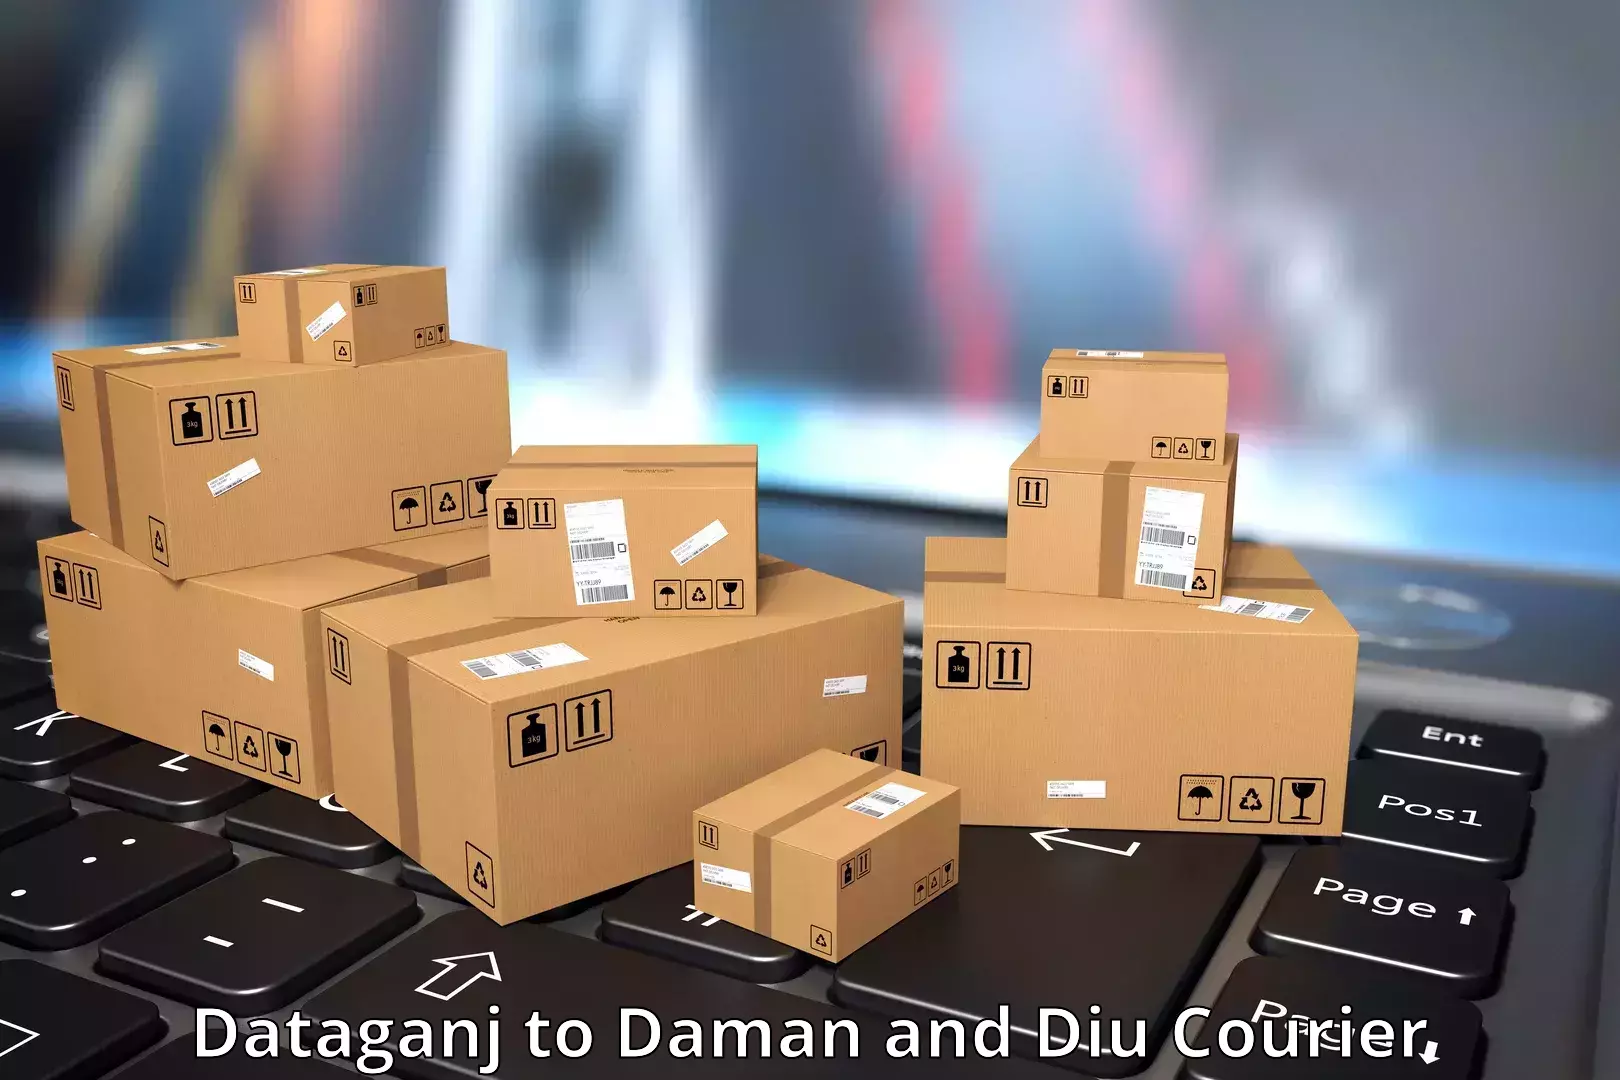 Logistics service provider Dataganj to Daman and Diu